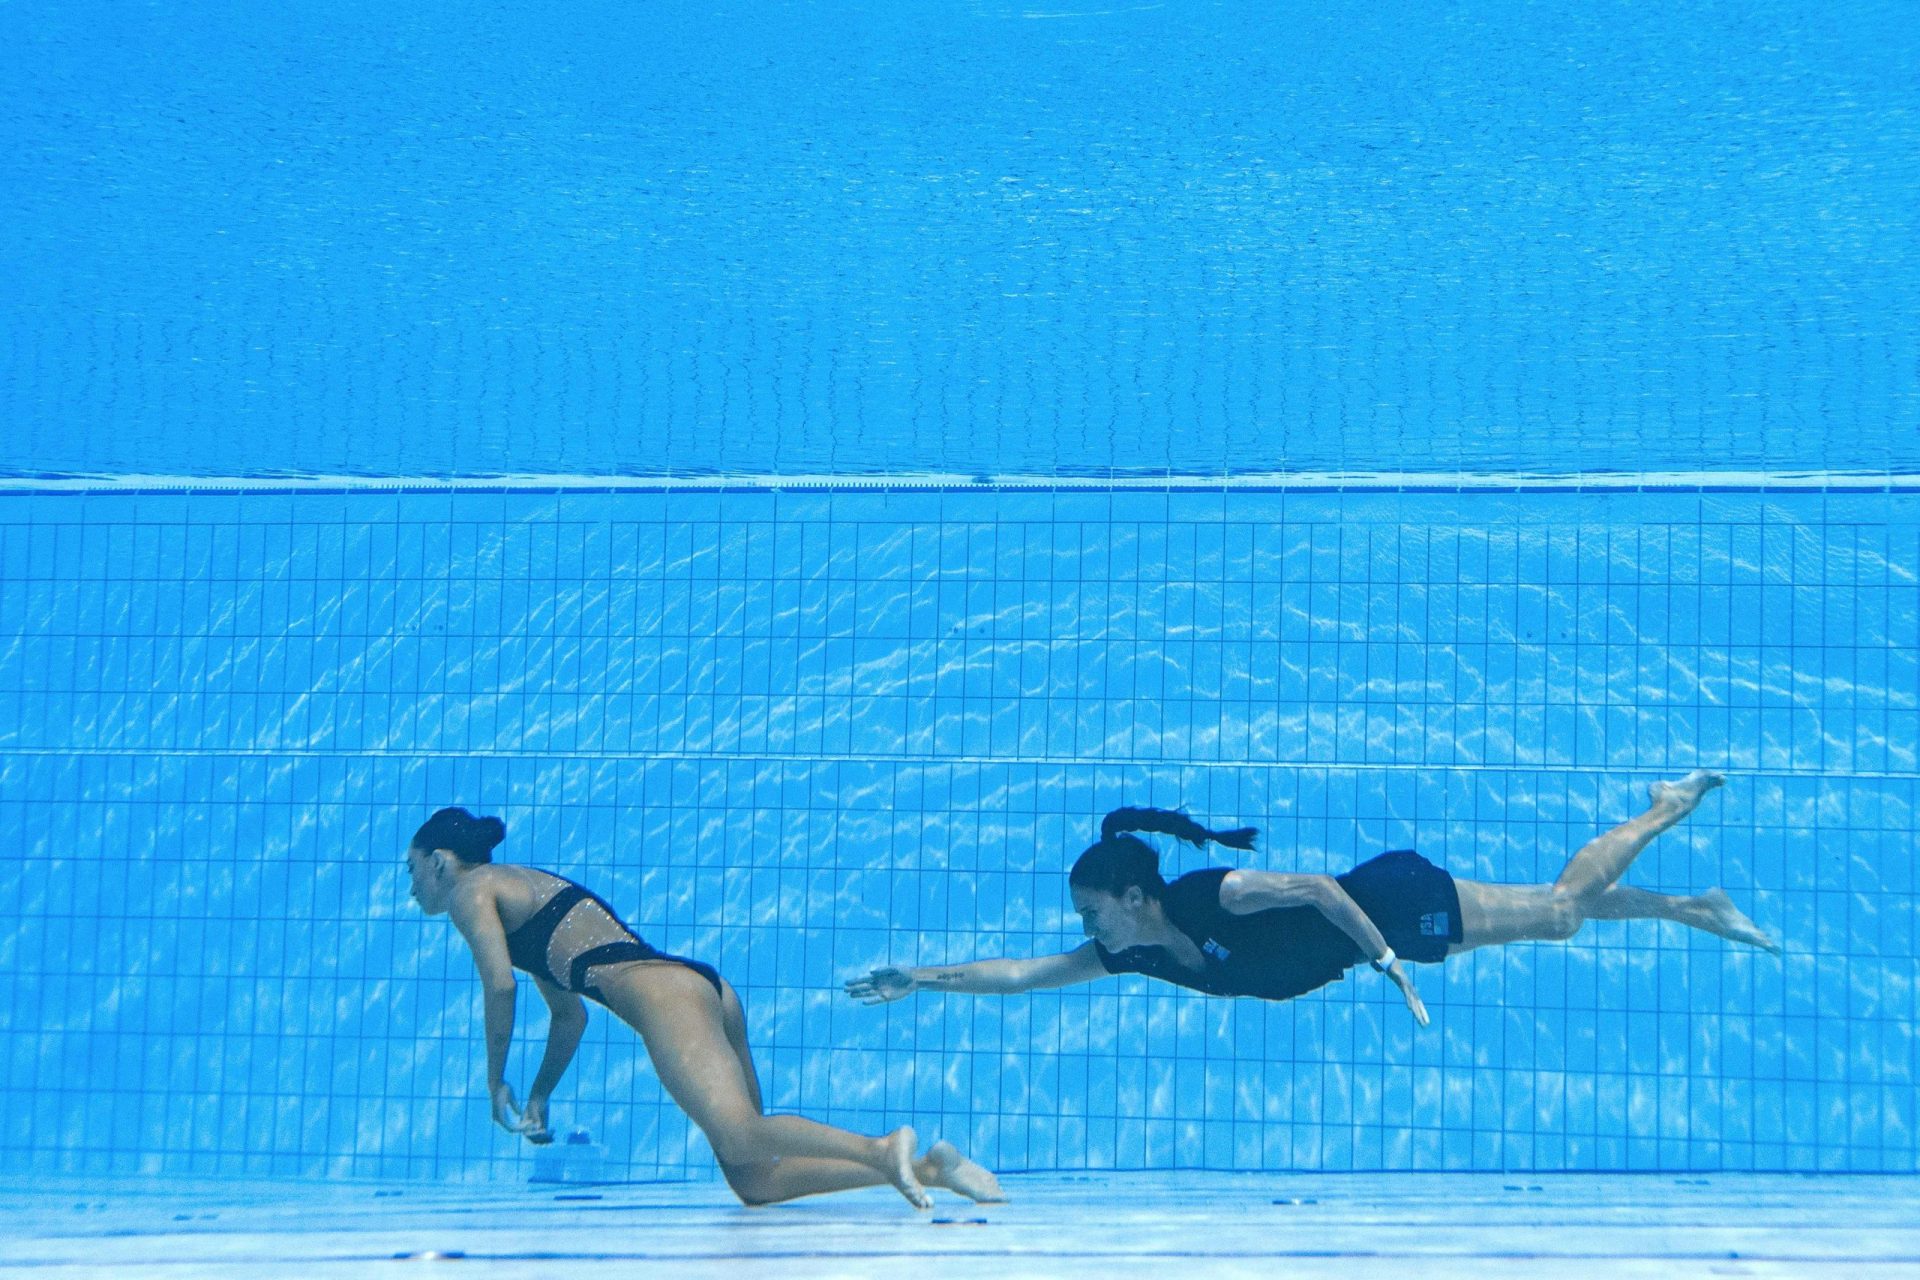 Nadadora desmaia na piscina e é salva pela treinadora nos mundiais de natação